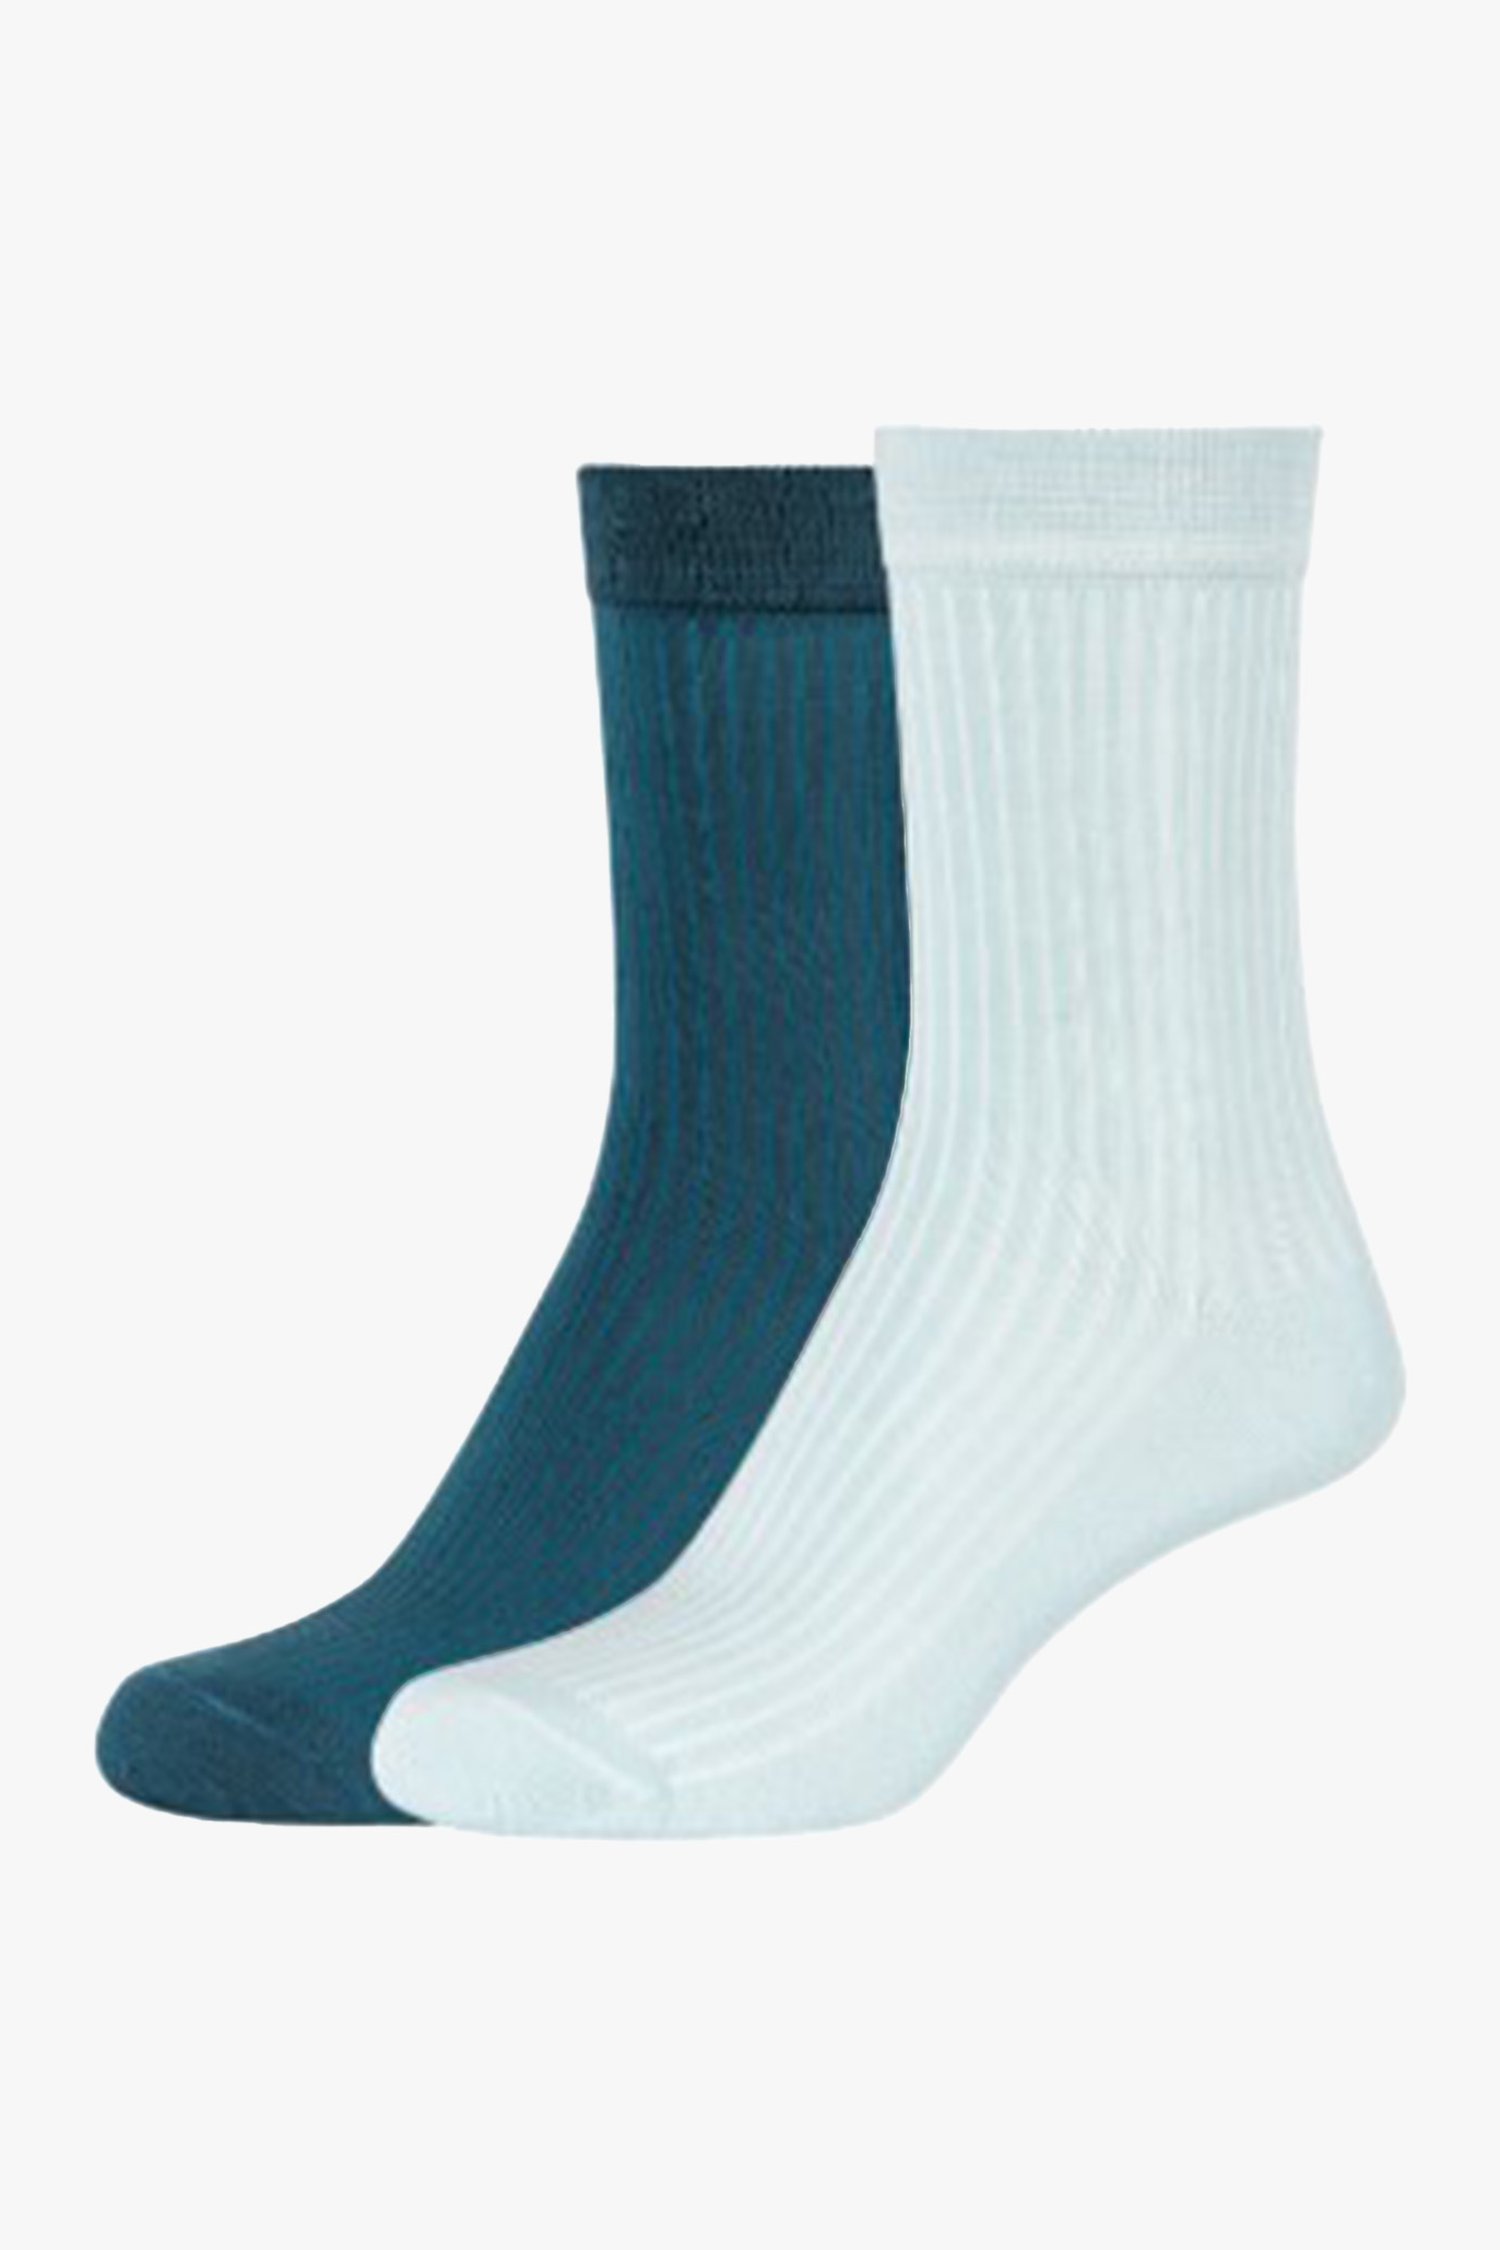 Blauwe sokken - 2 tinten van Camano voor Dames